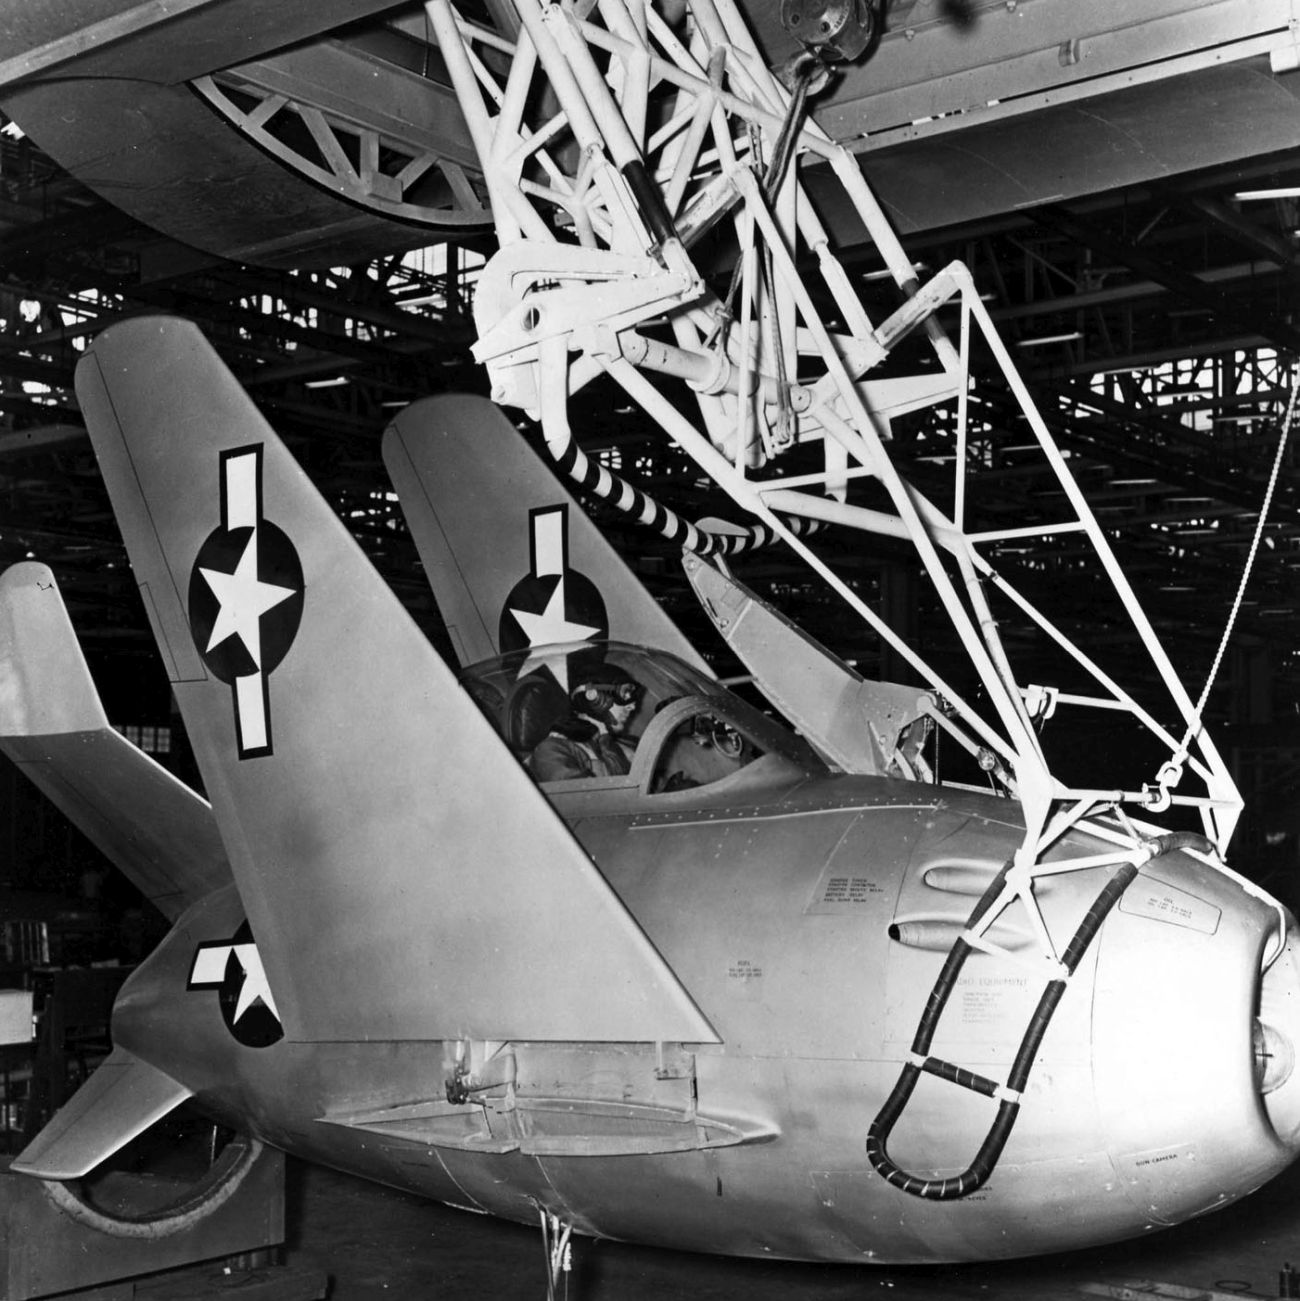 XF-85 Goblin podwieszony na trapezie. To zdjęcie dobrze pokazuje zasadę działania haka mocującego (fot. US Air Force)